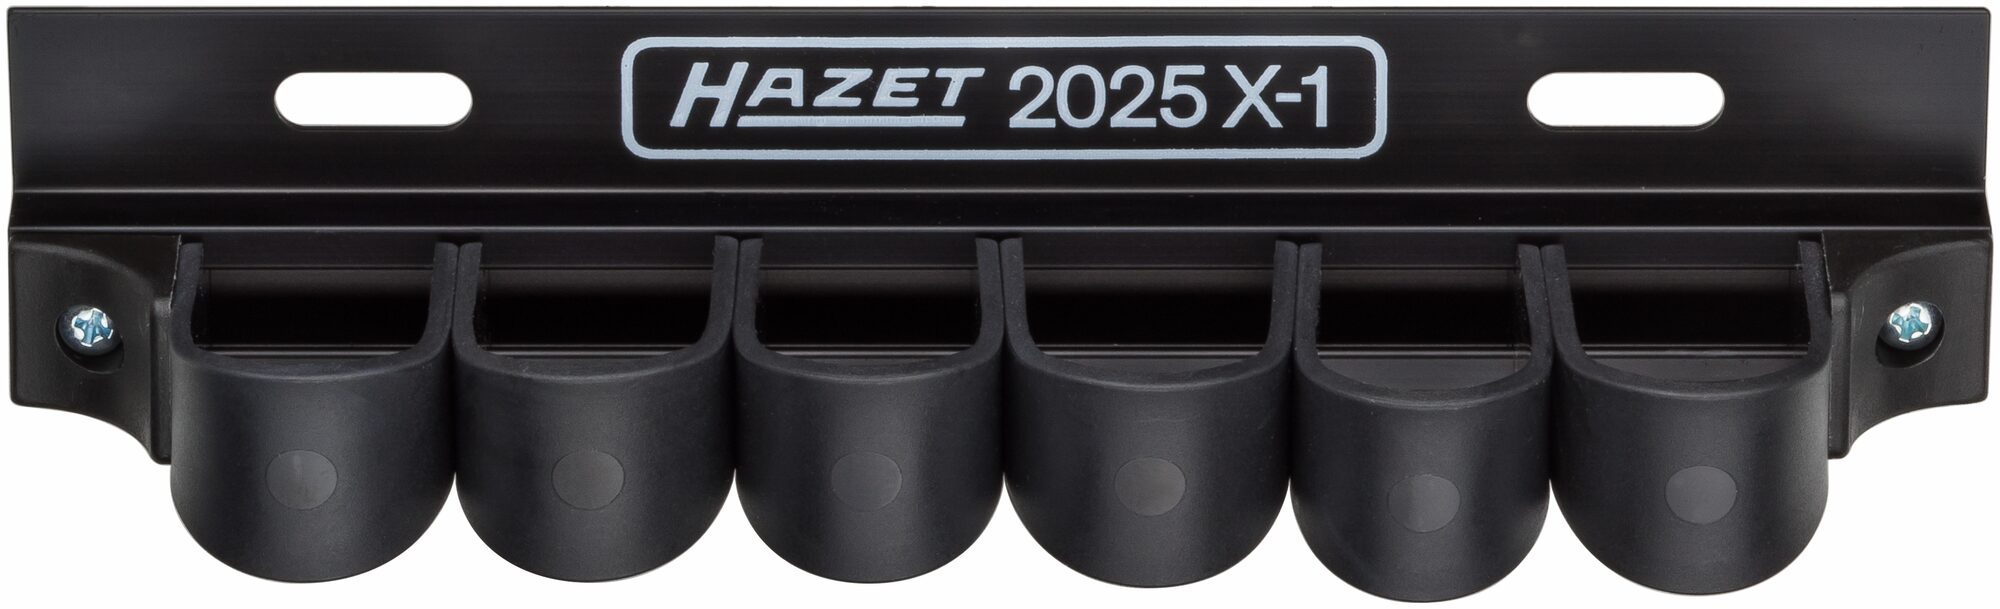 HAZET Werkzeug Halter 2025X-1